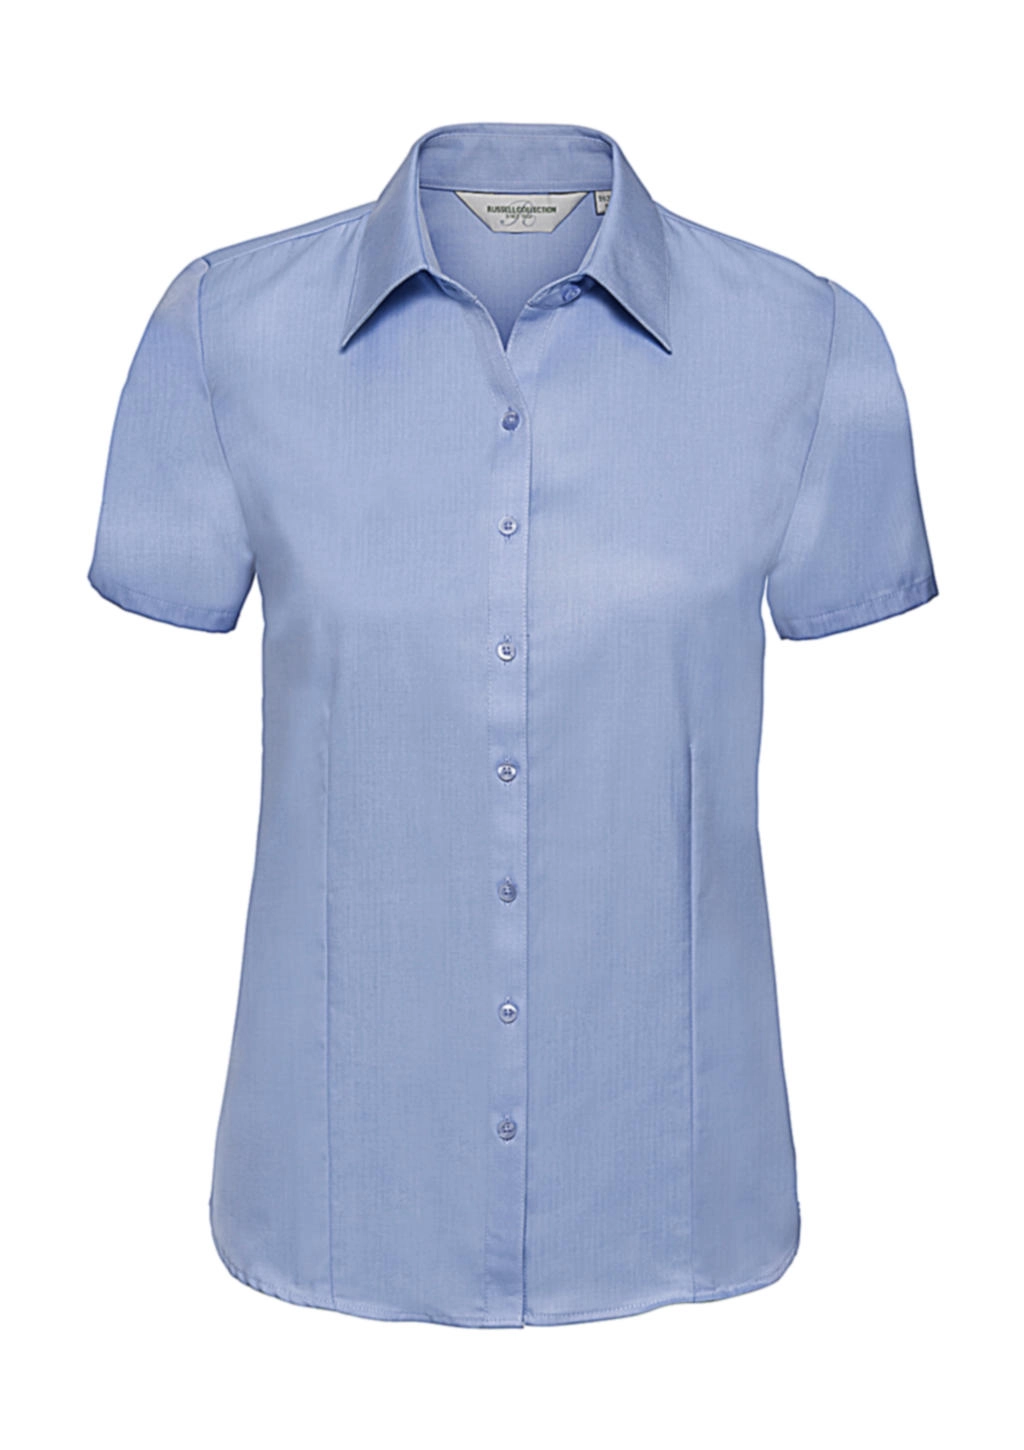 Ladies` Herringbone Shirt zum Besticken und Bedrucken in der Farbe Light Blue mit Ihren Logo, Schriftzug oder Motiv.